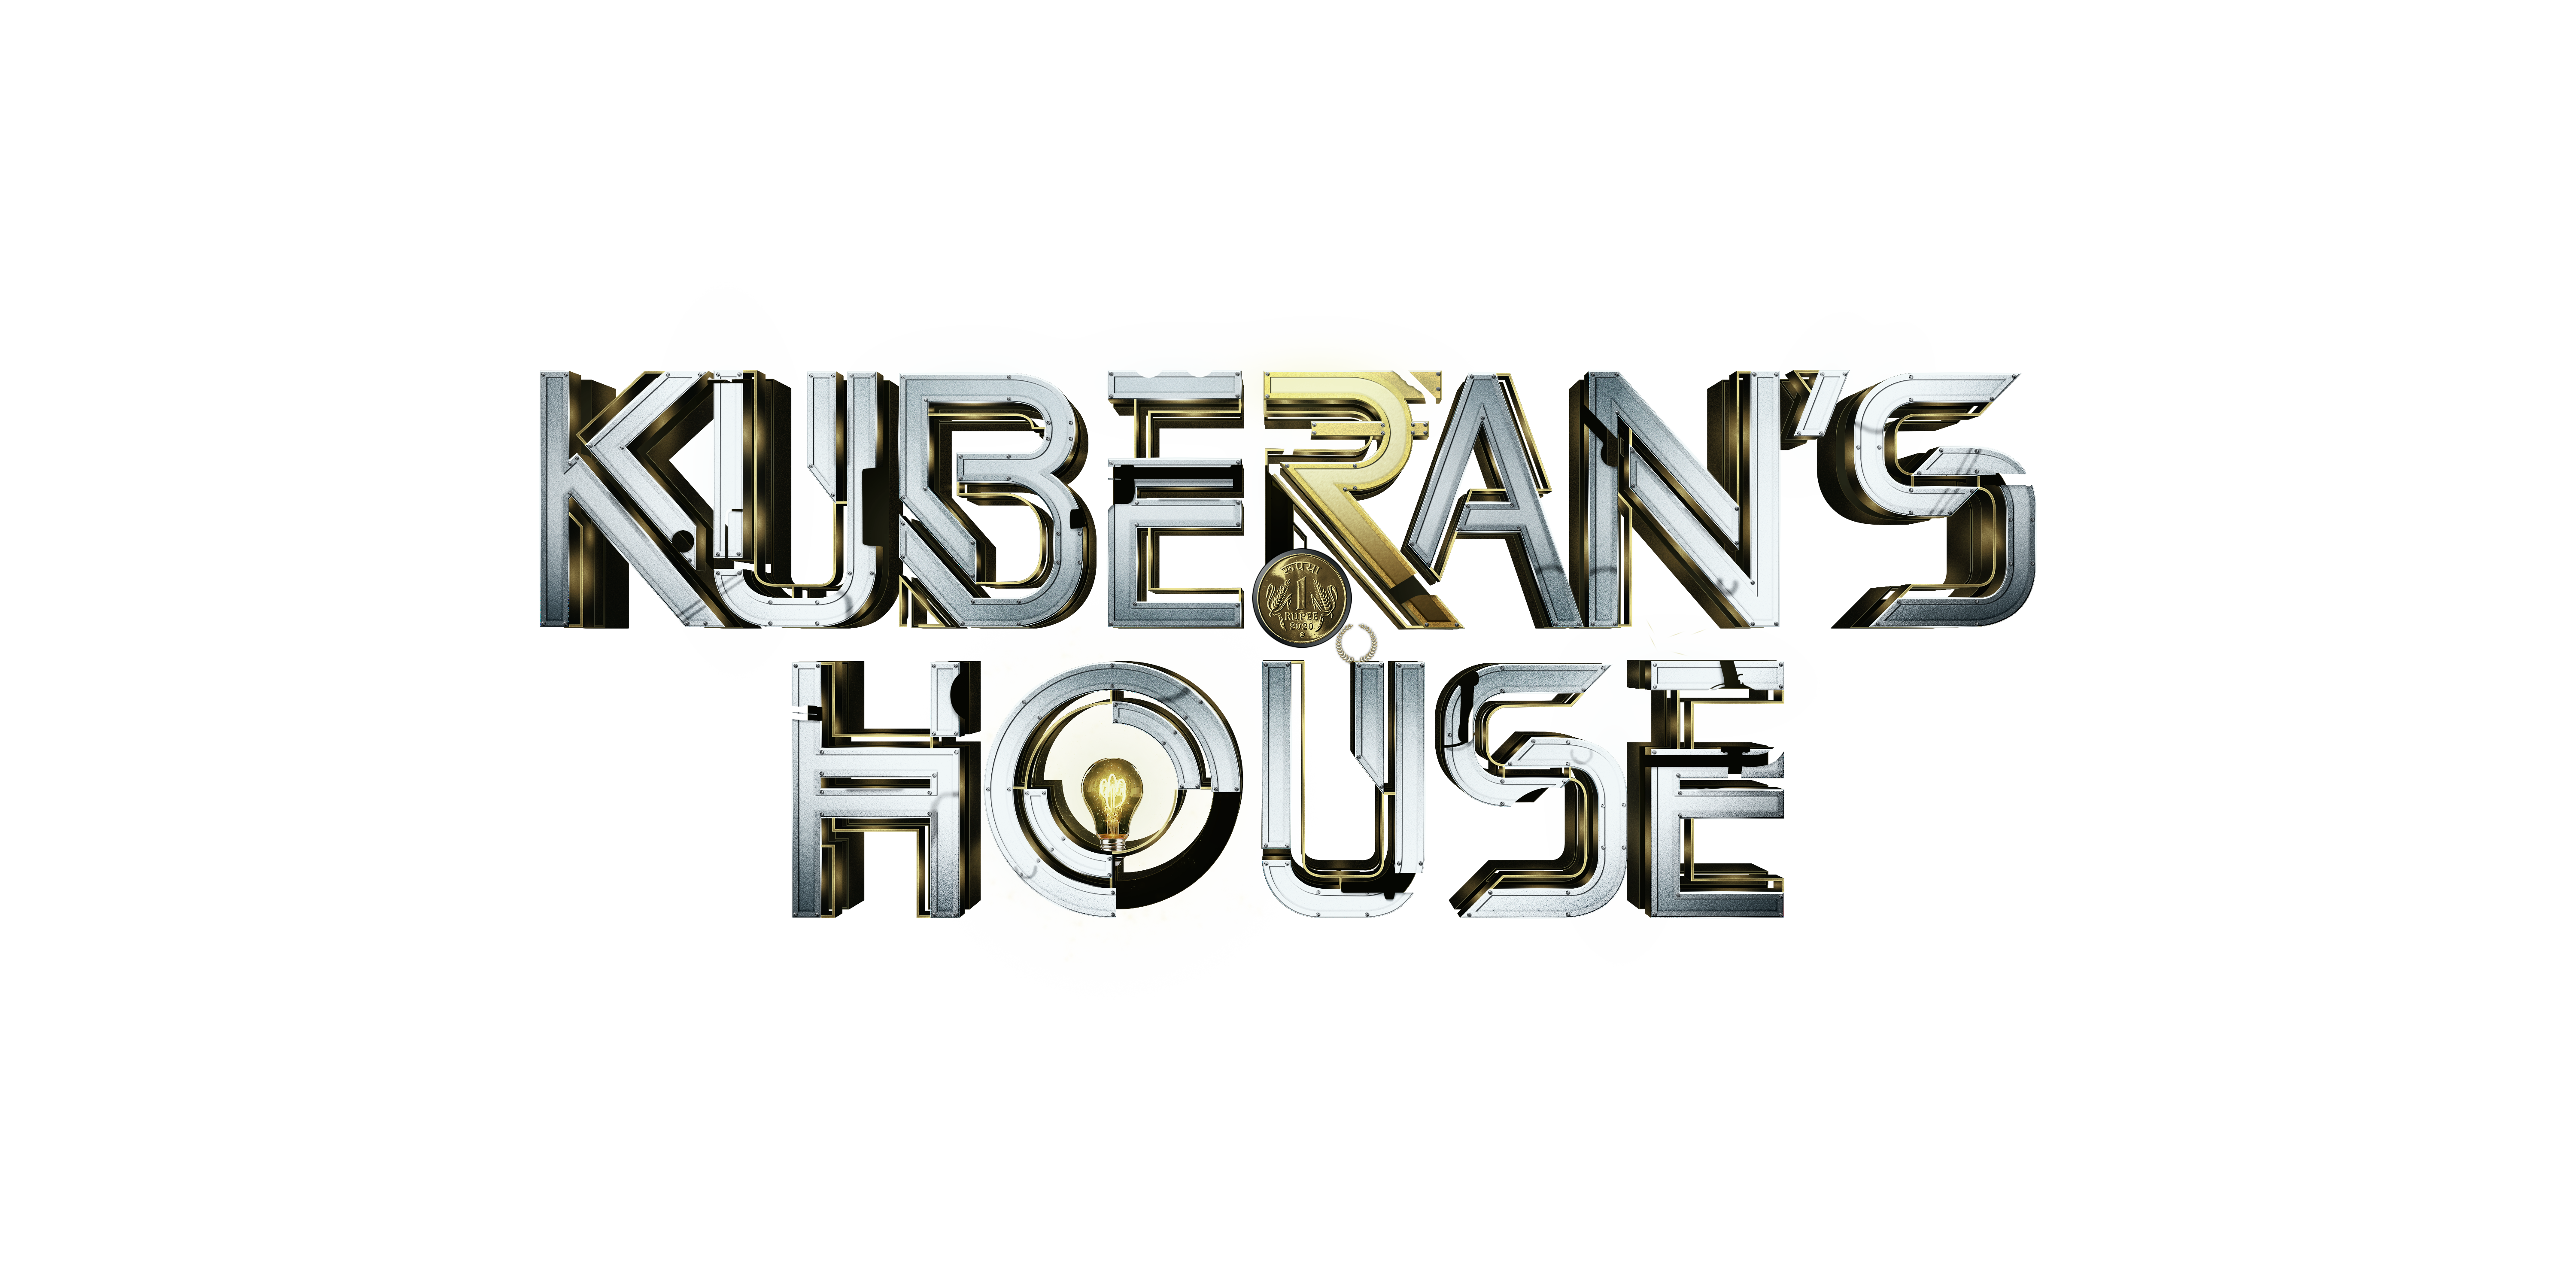 Kuberan’s House